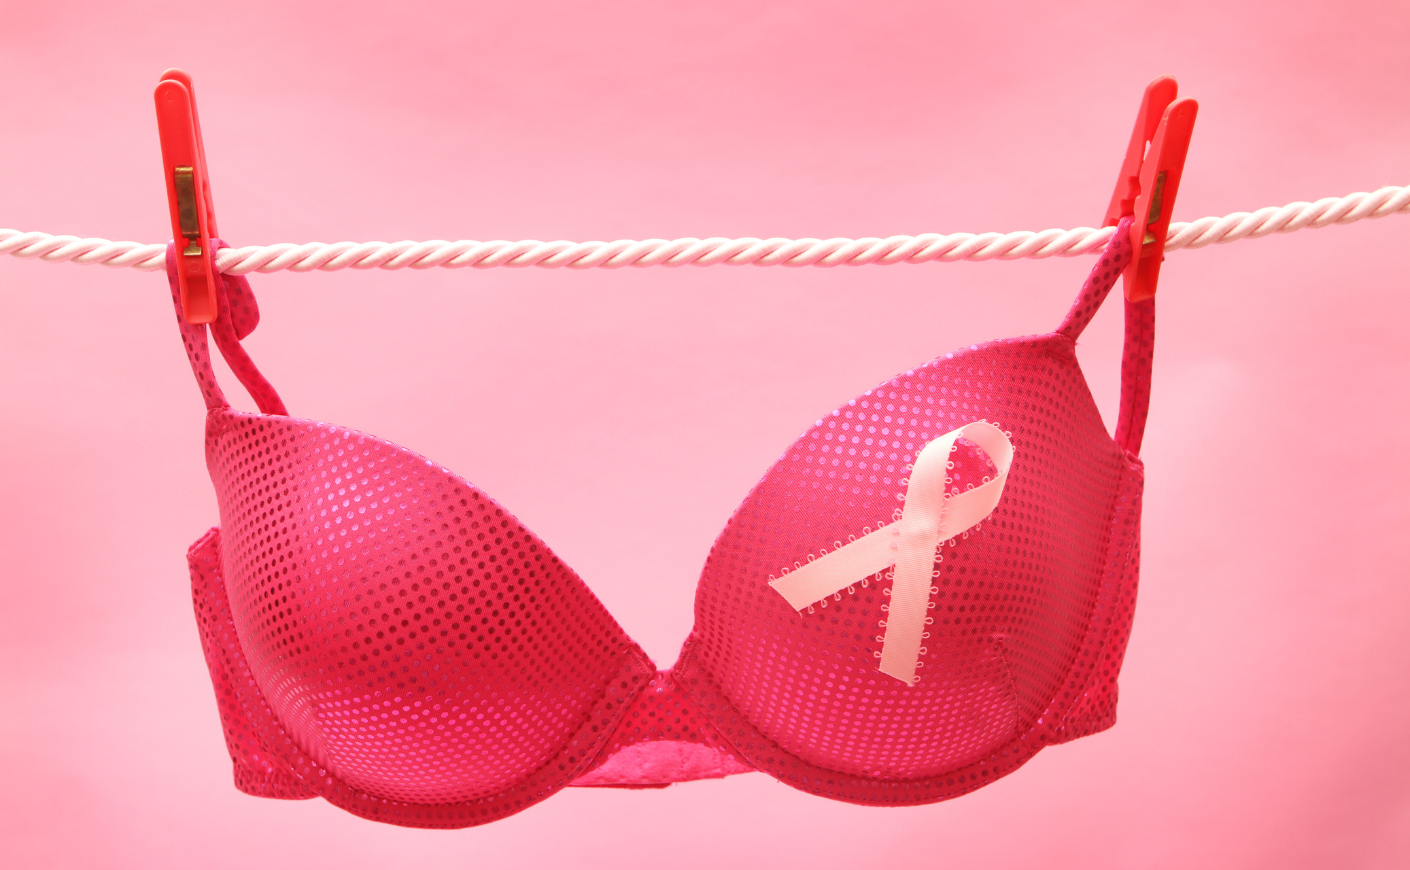 Bridge bra display in Kent raises cancer awareness, helps women in need